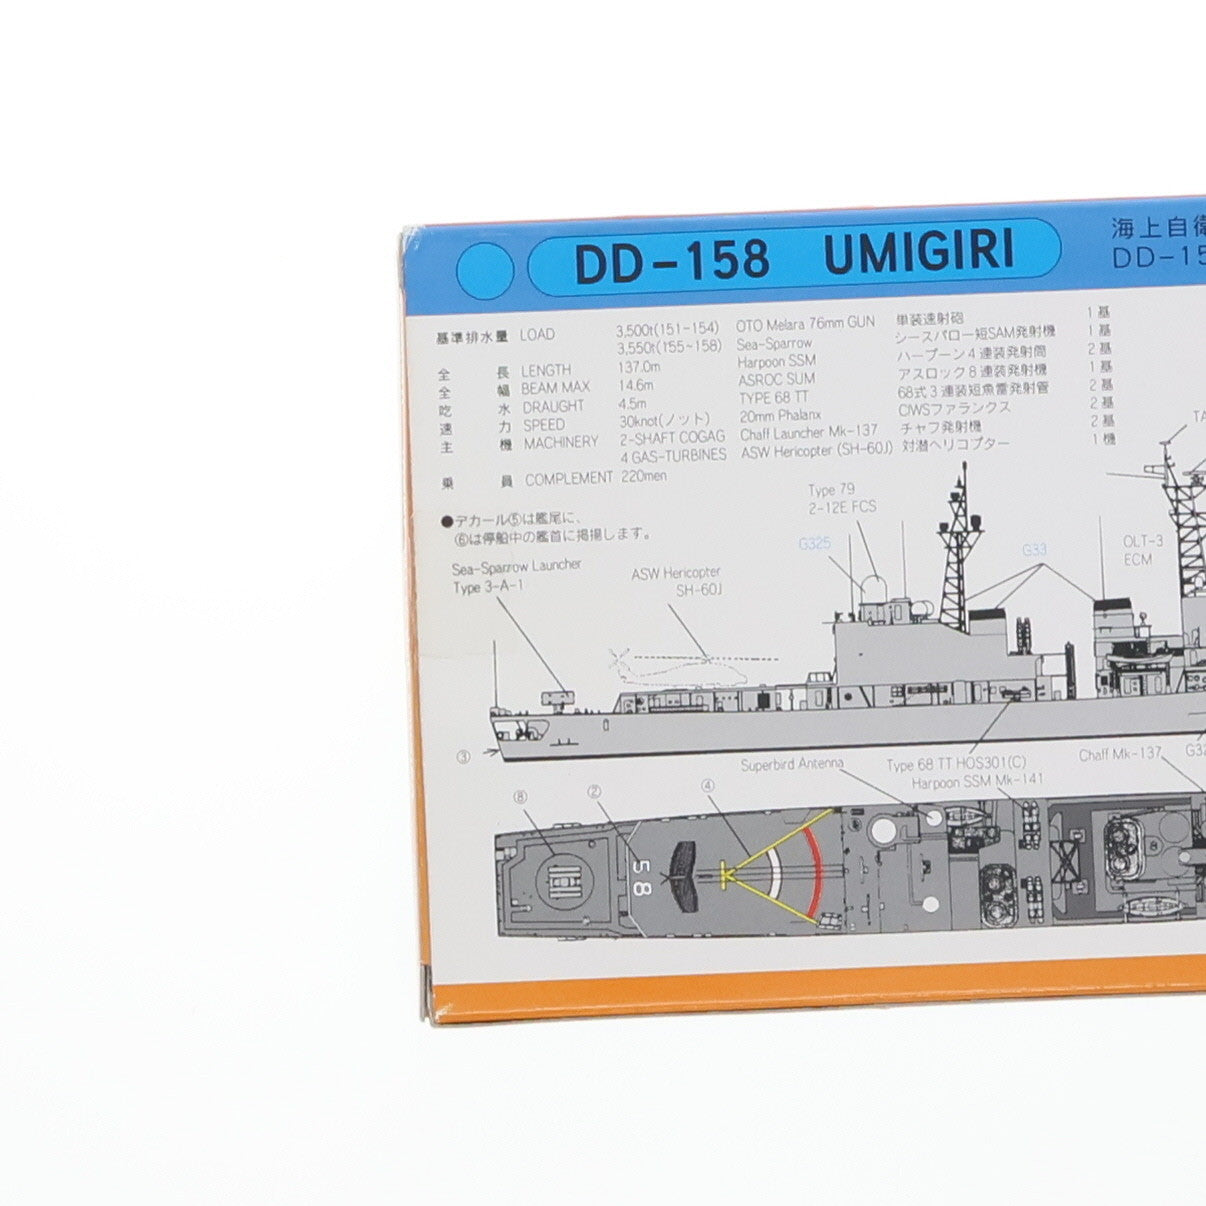 【中古即納】[PTM]スカイウェーブシリーズ 1/700 海上自衛隊護衛艦 DD-158 うみぎり プラモデル(J14) ピットロード(19991231)